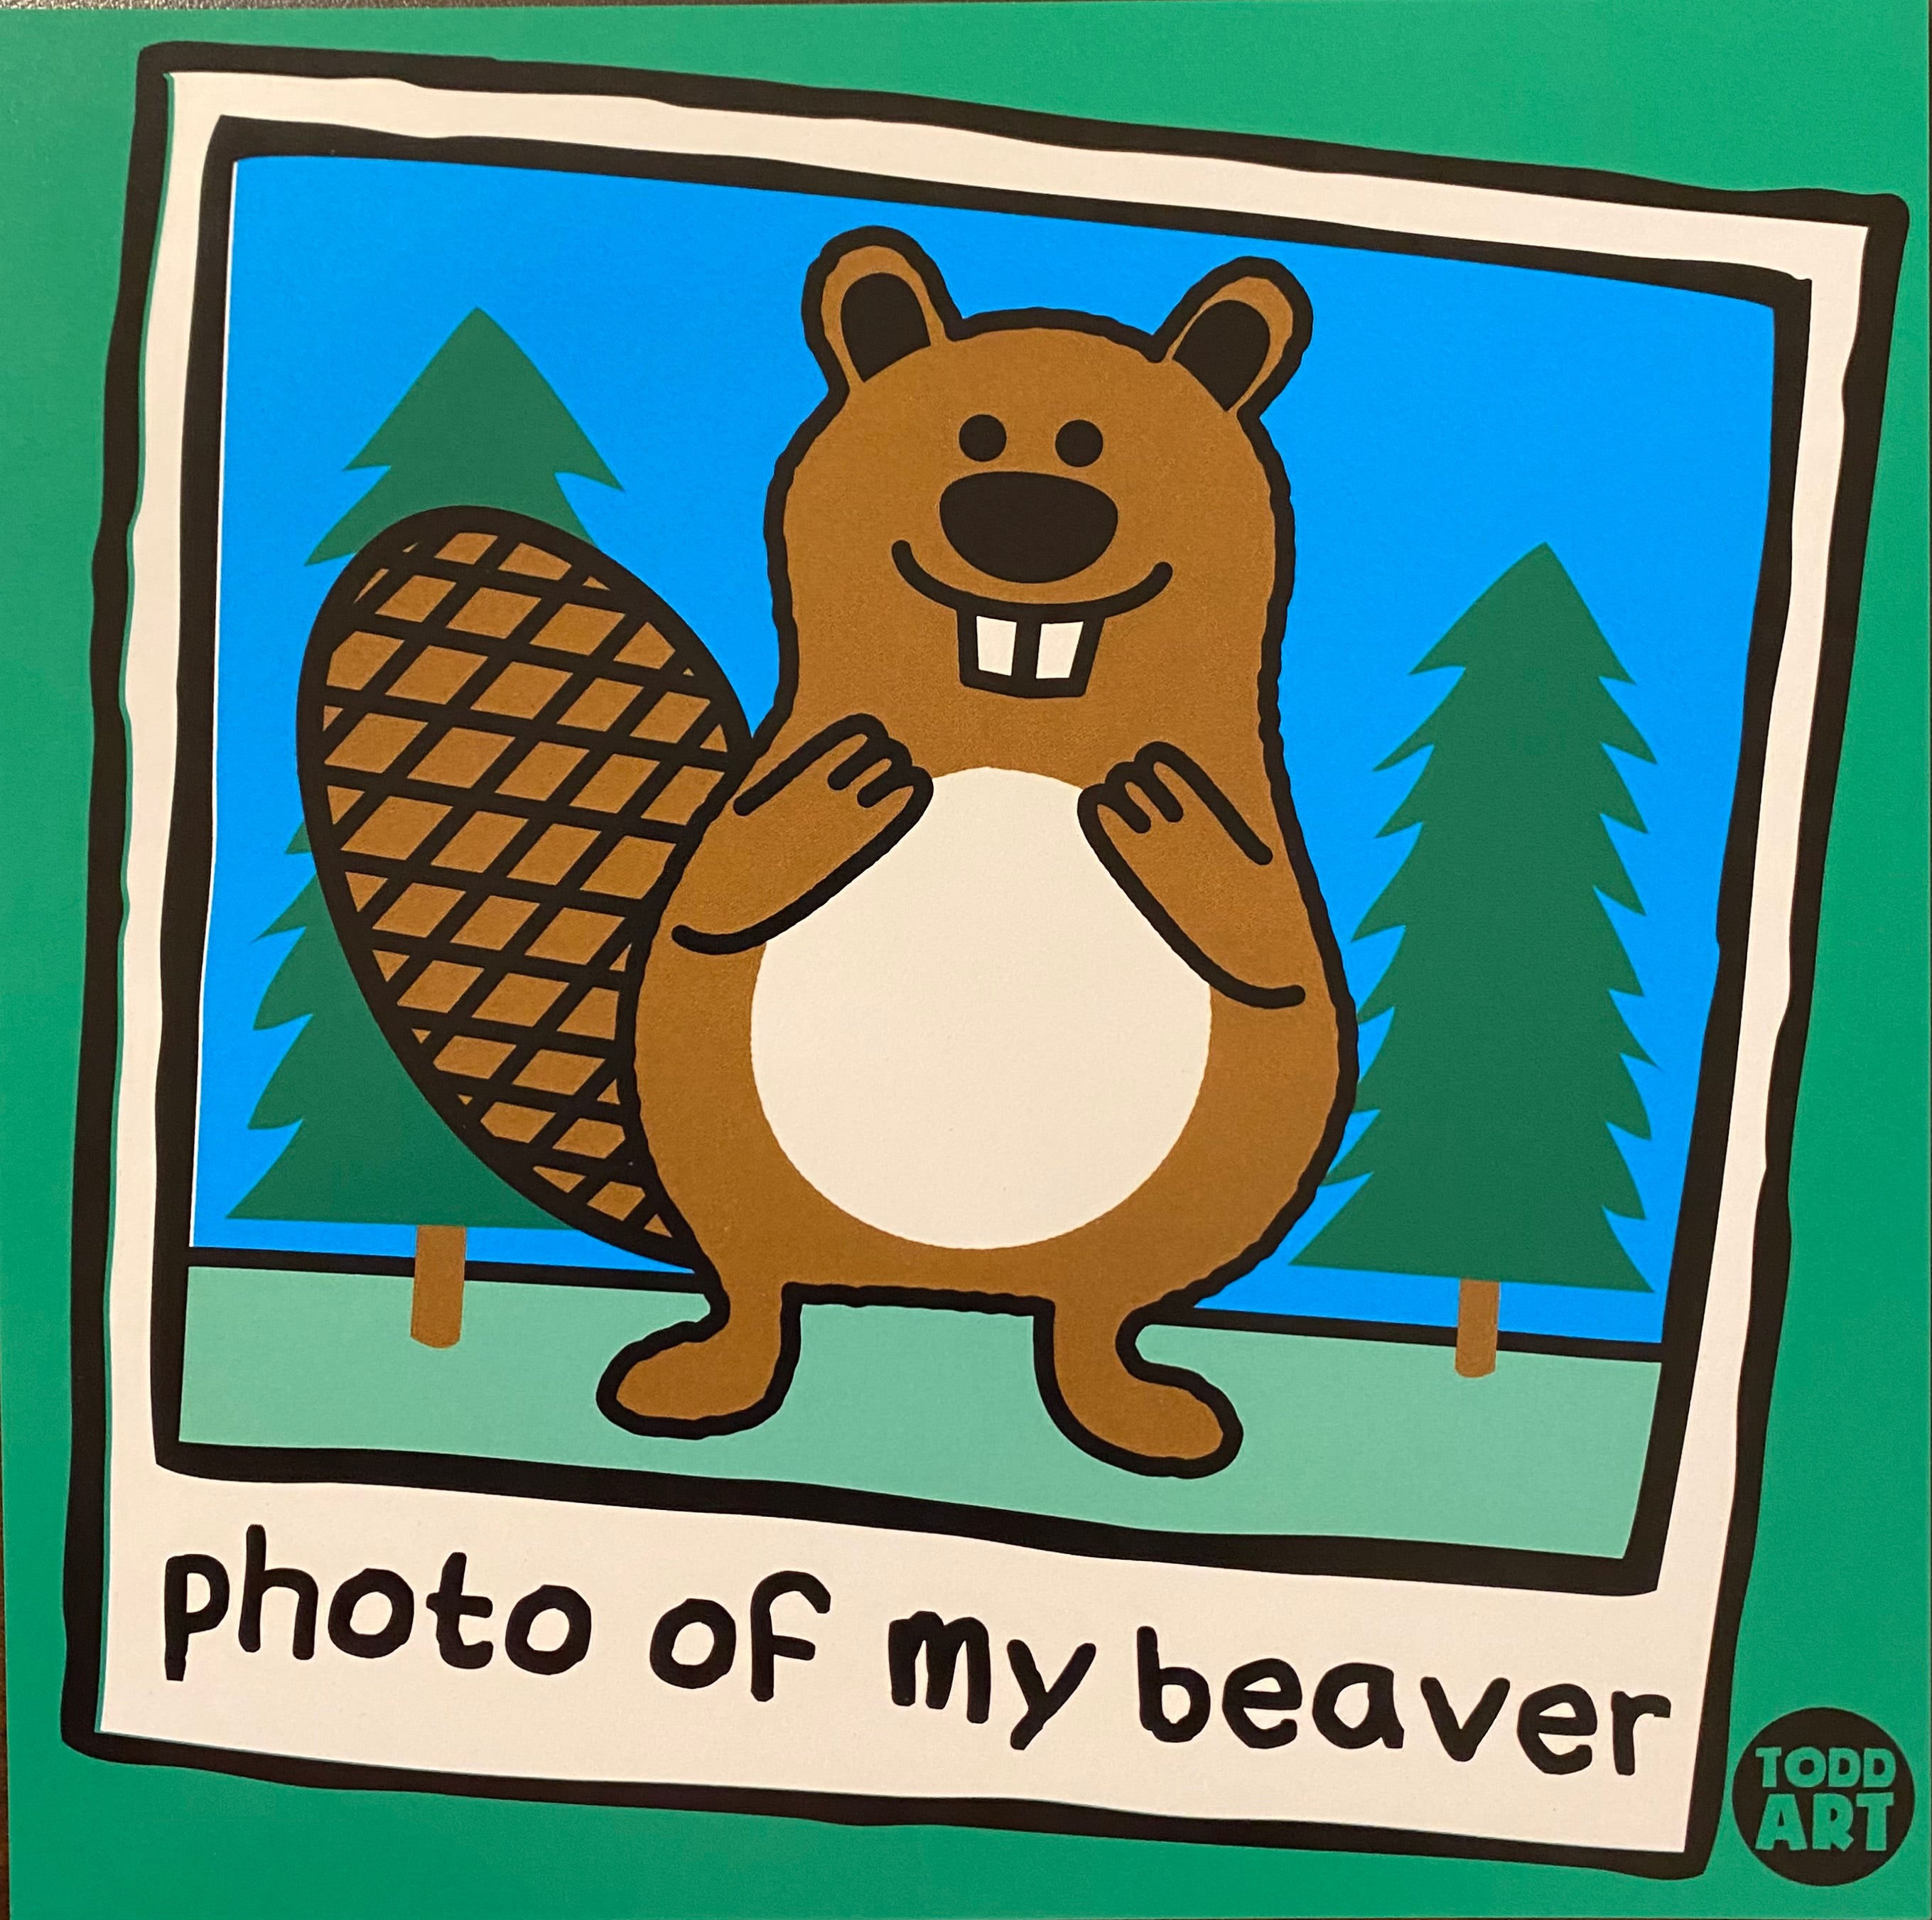 Photo of My Beaver